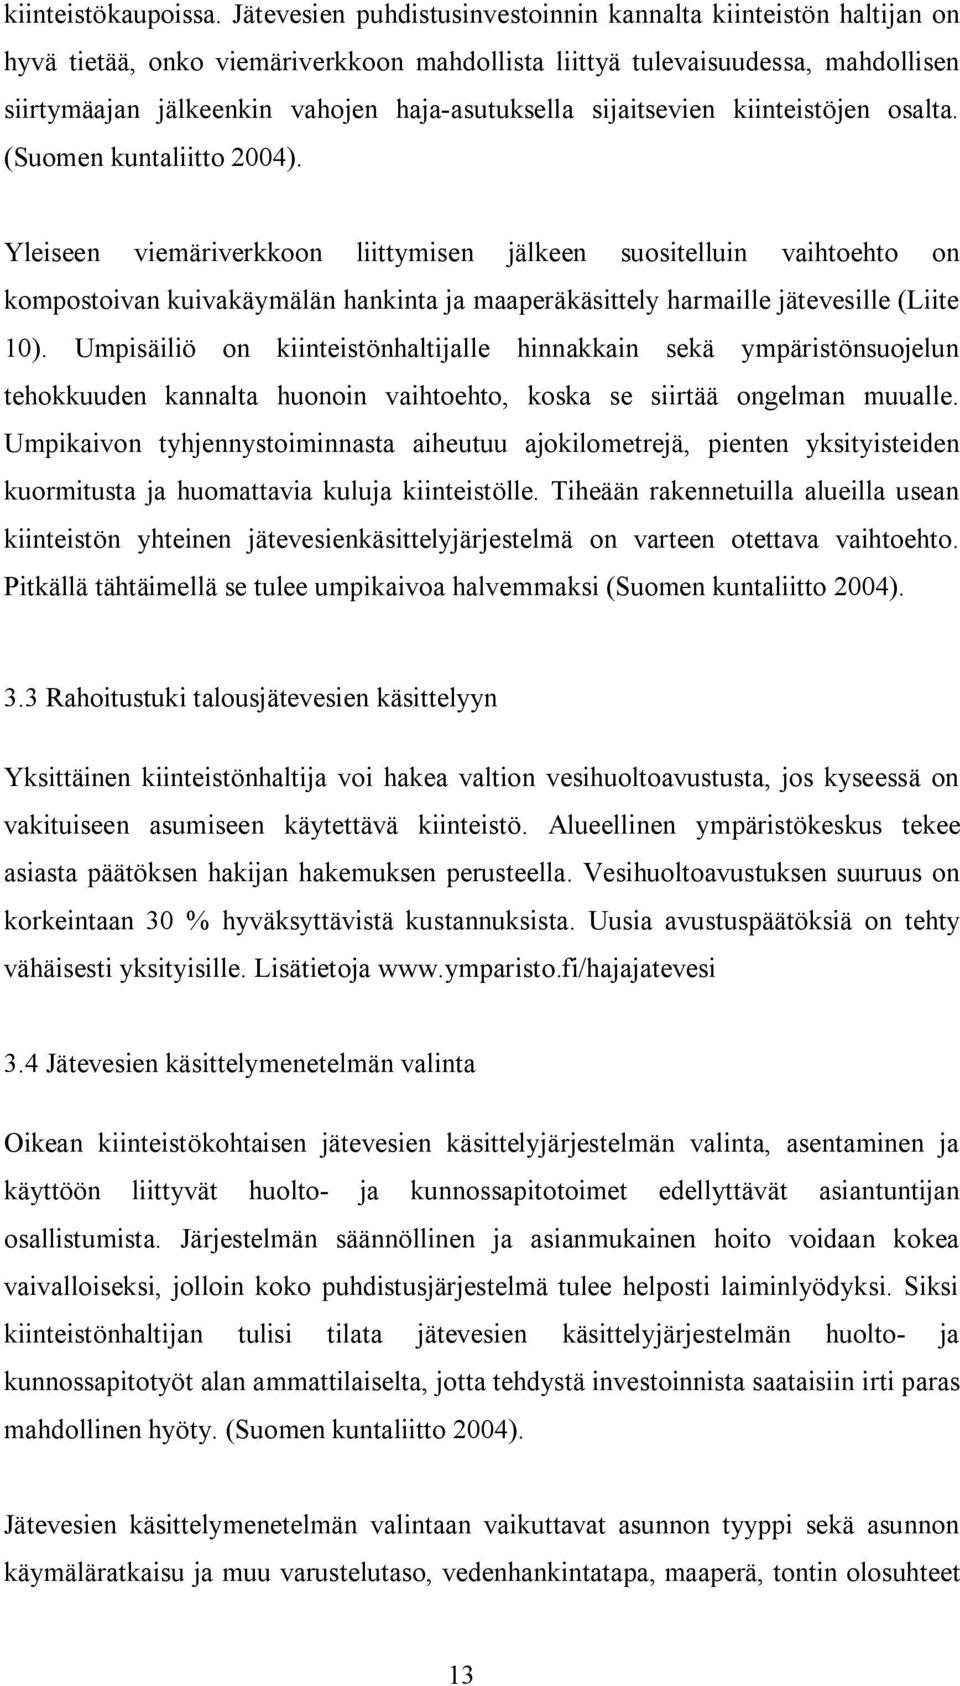 sijaitsevien kiinteistöjen osalta. (Suomen kuntaliitto 2004).